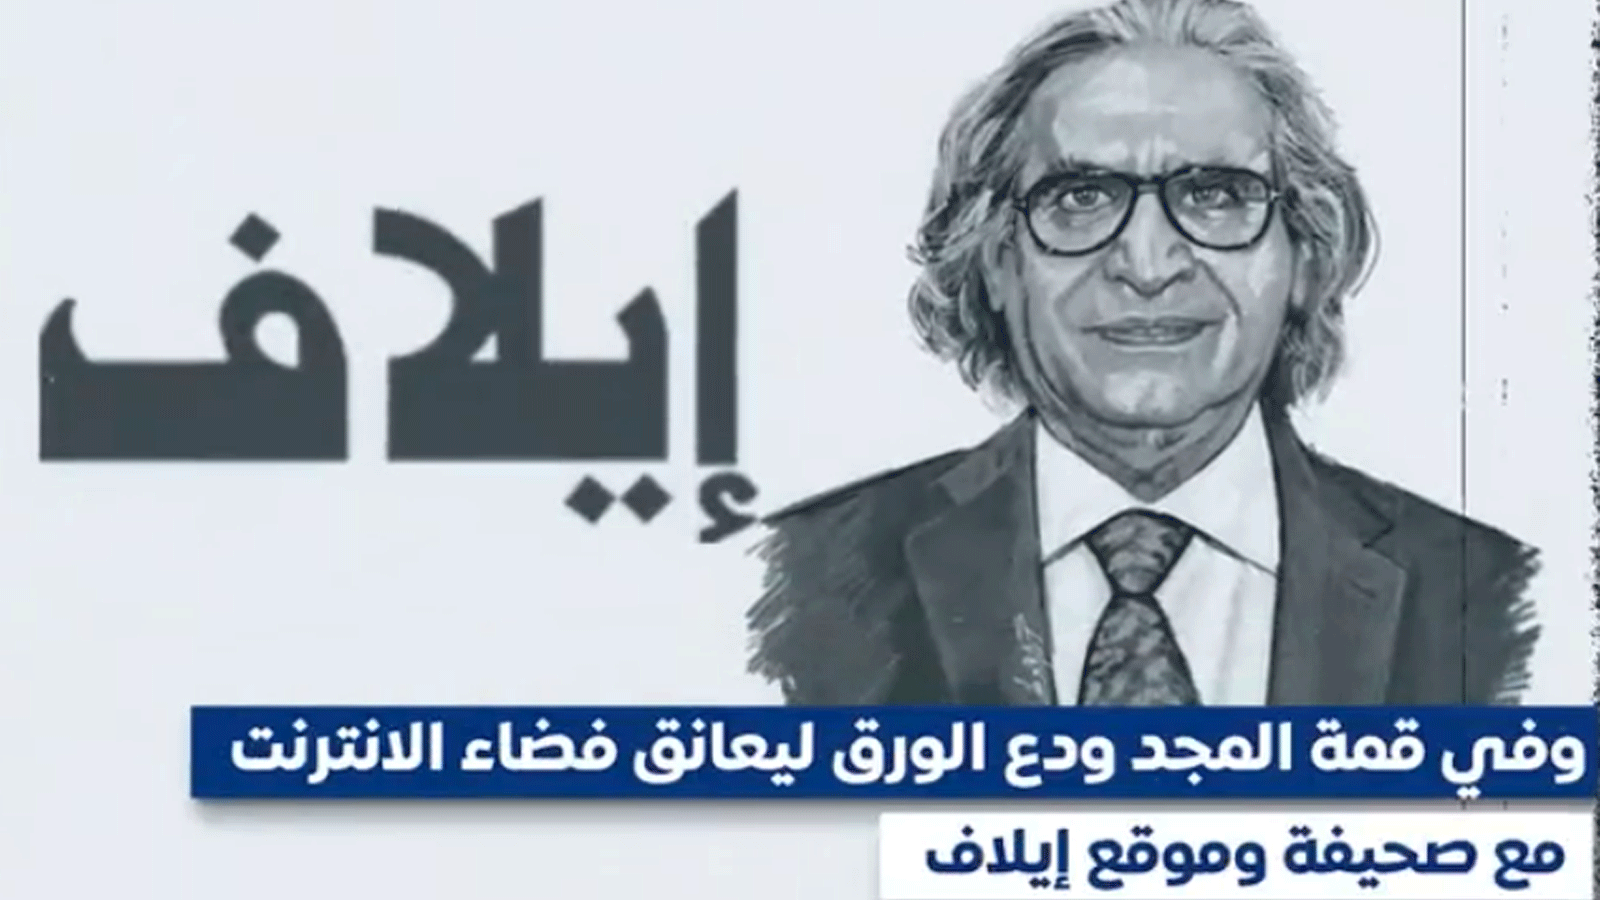 عثمان العمير يعانق فضاء الانترنت مع صحيفة 